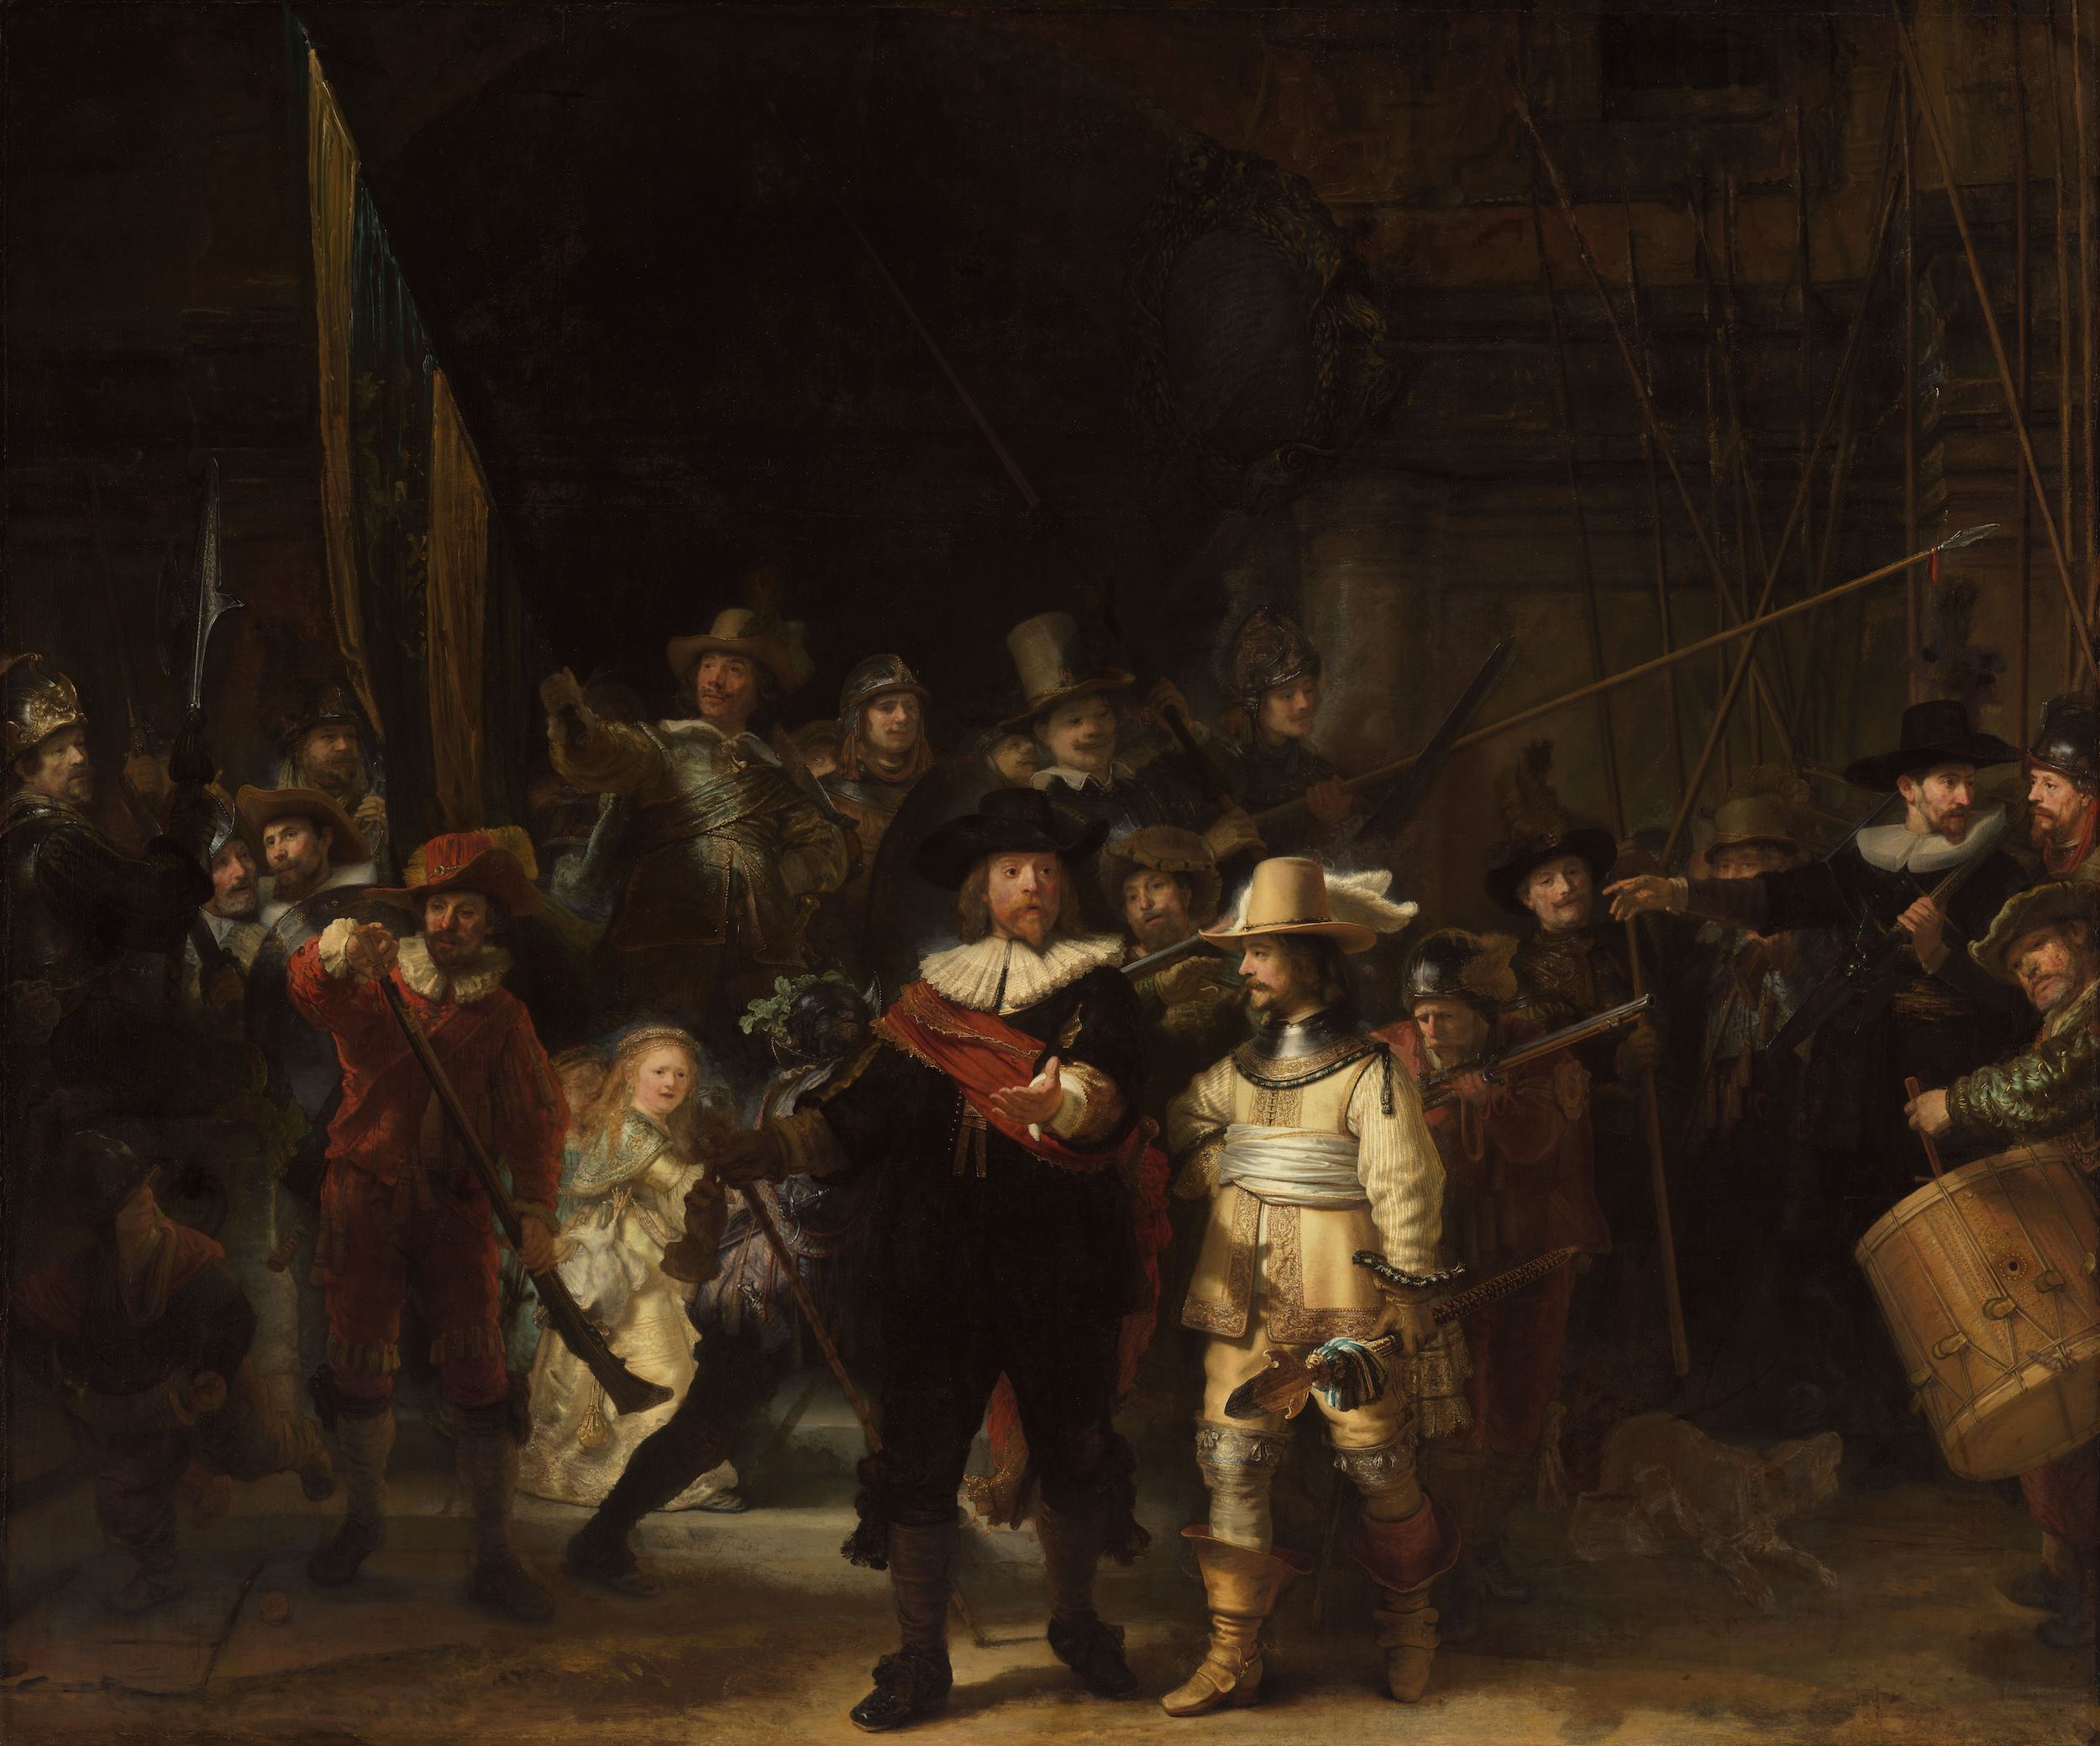 夜巡 by Rembrandt van Rijn - 1642 年 - 379.5 × 453.5 釐米 